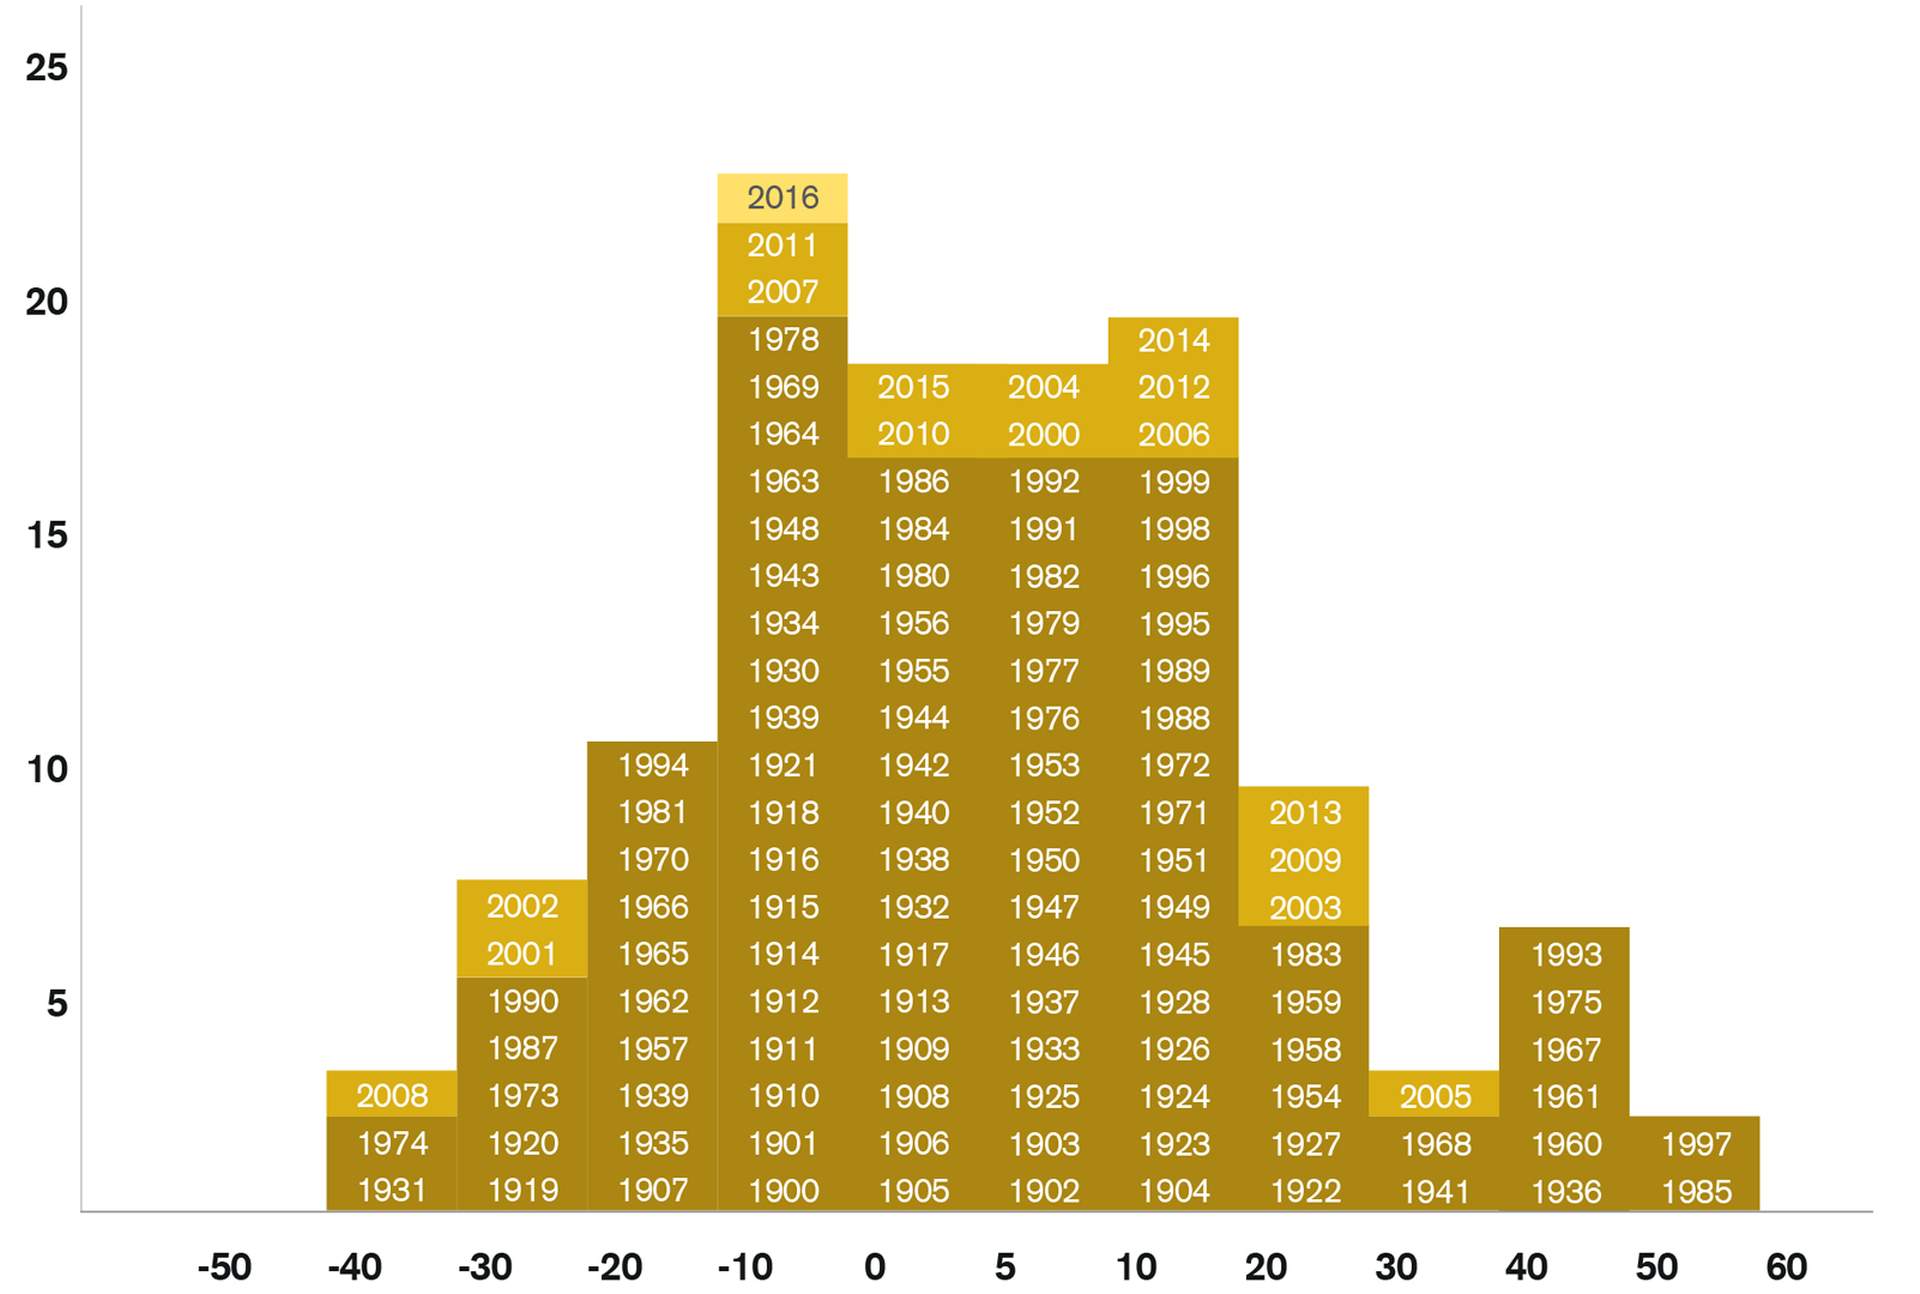 Distribuzione della frequenza dei rendimenti annui delle azioni svizzere (1900 - 2016)